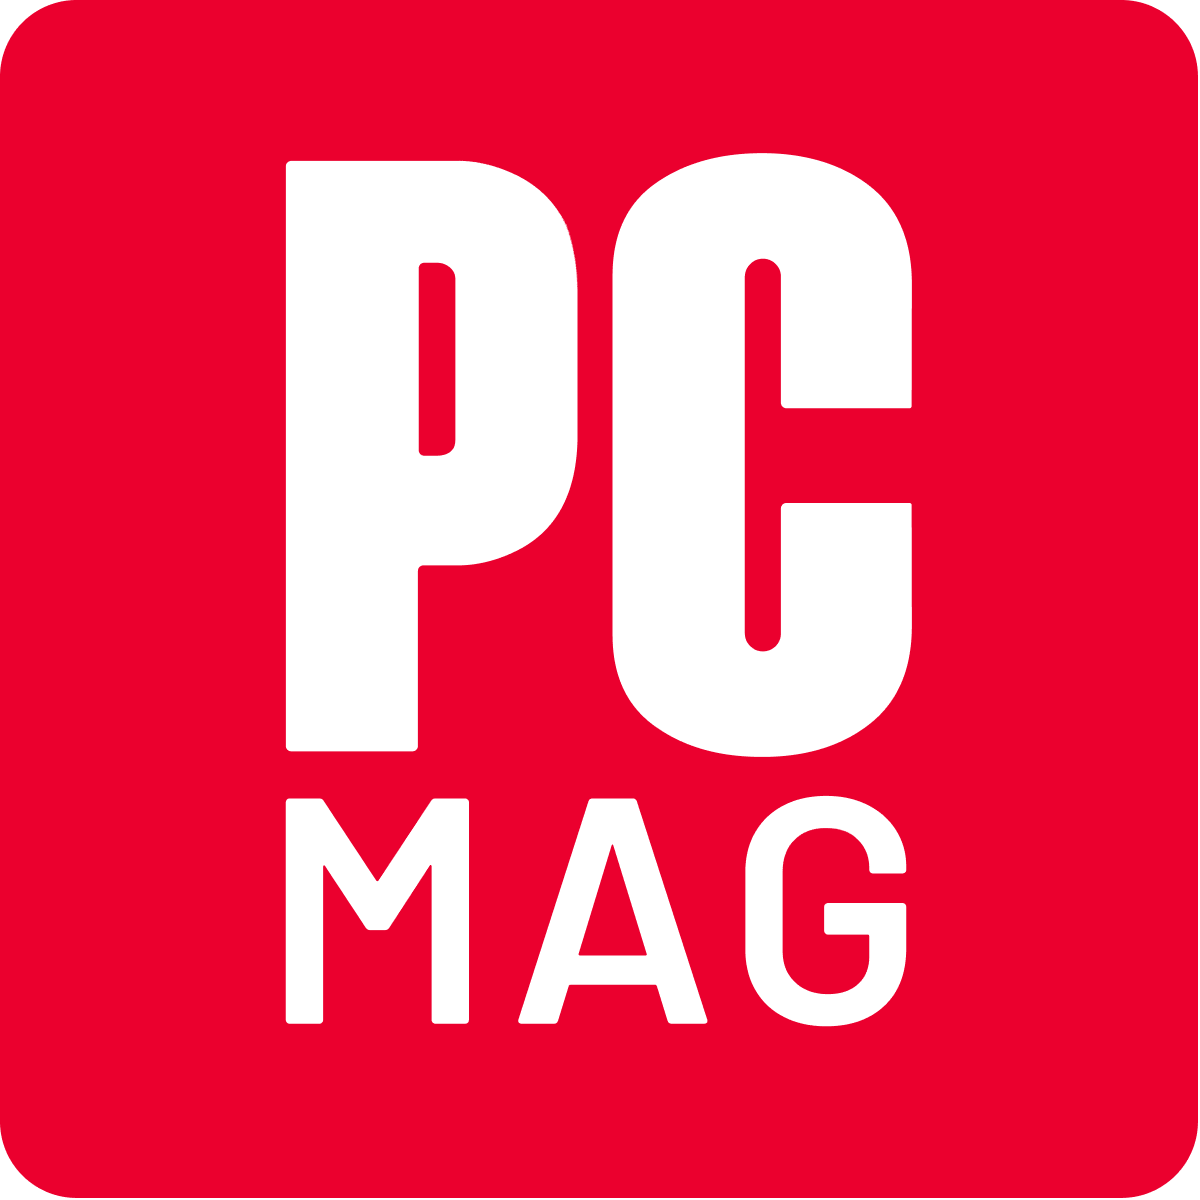 www.pcmag.com